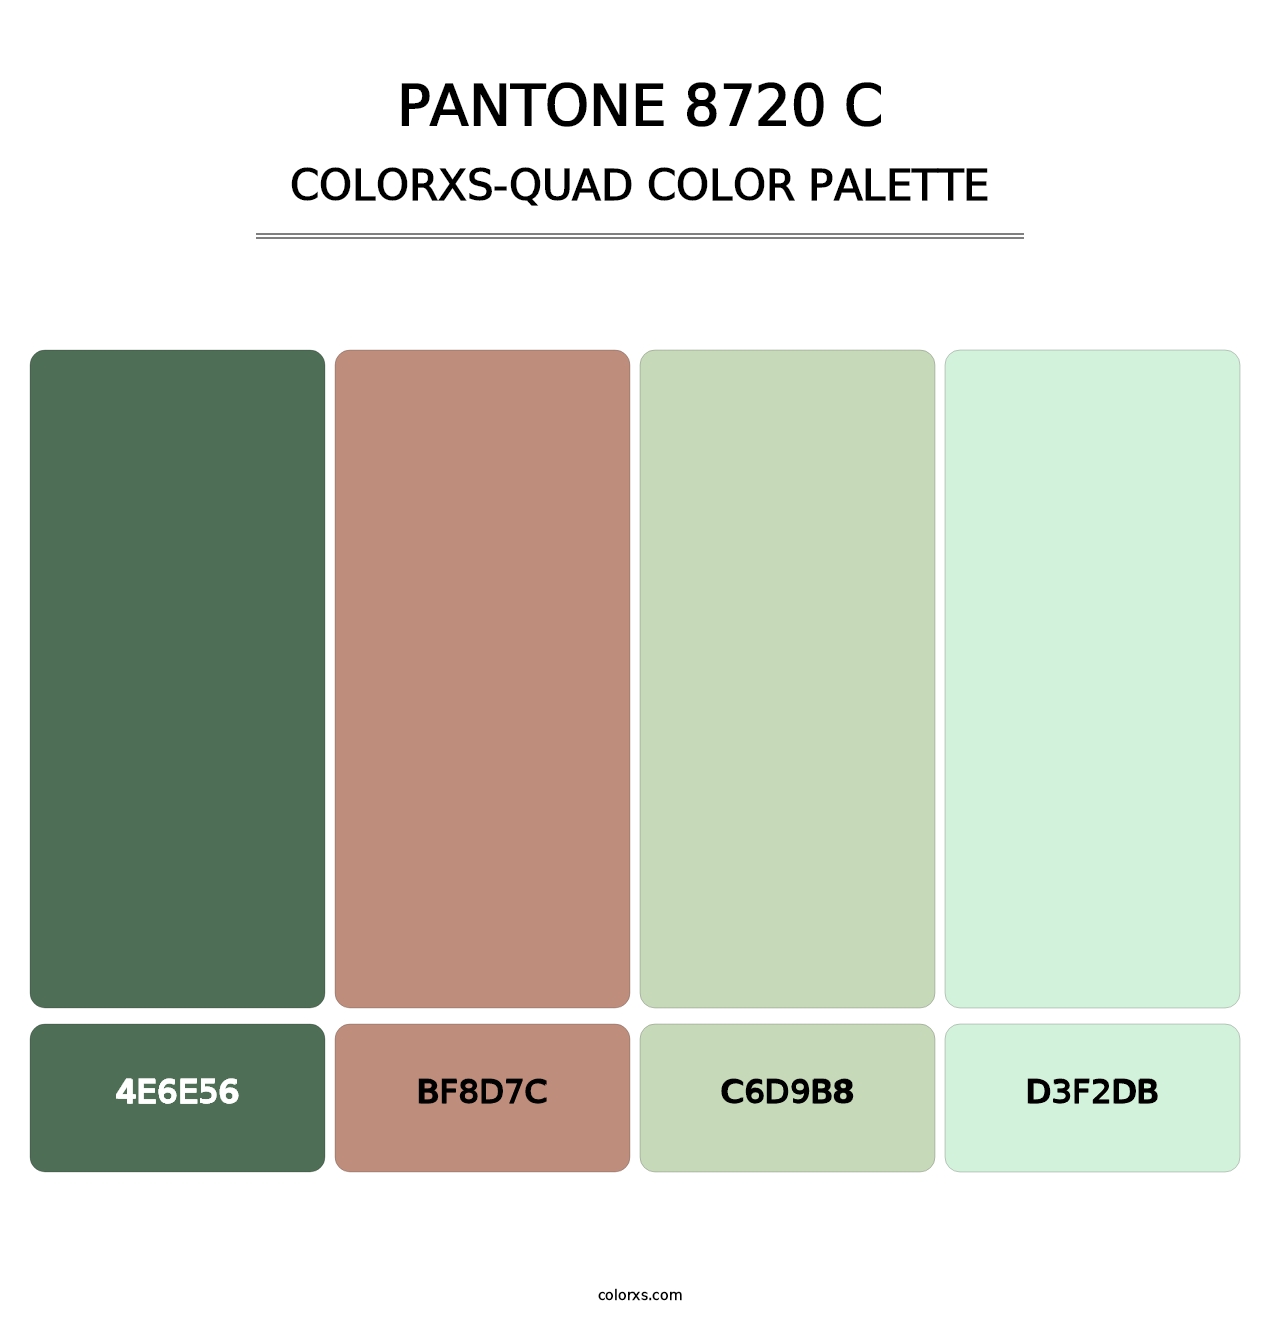 PANTONE 8720 C - Colorxs Quad Palette